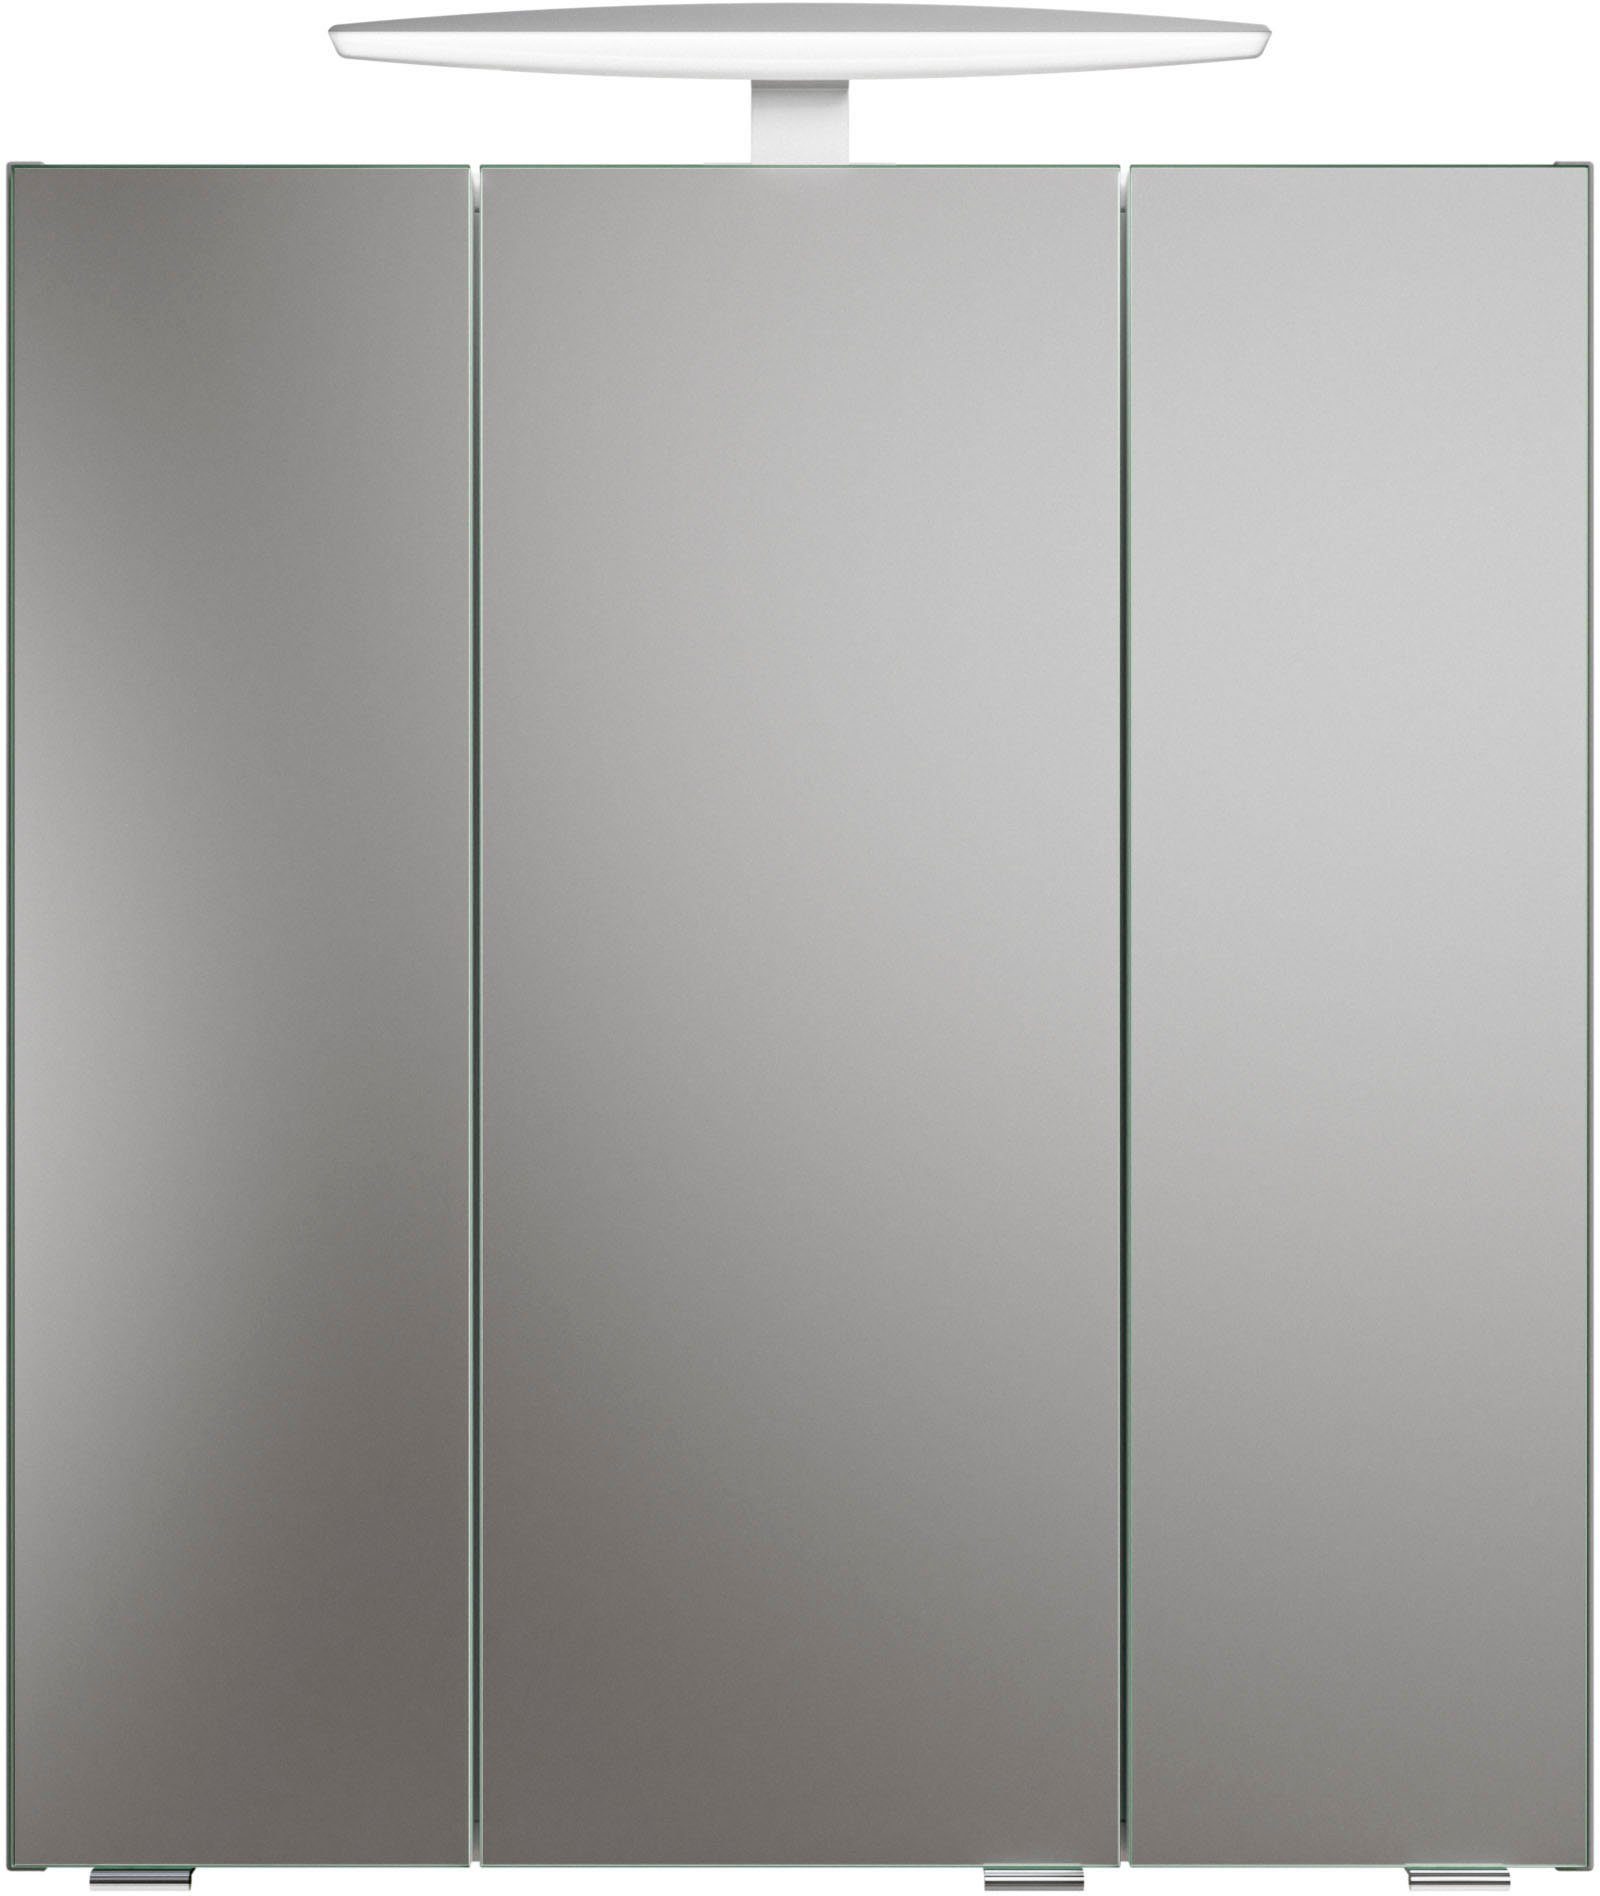 PELIPAL Quickset Badezimmerspiegelschrank 1 937, Aufsatzleuchte